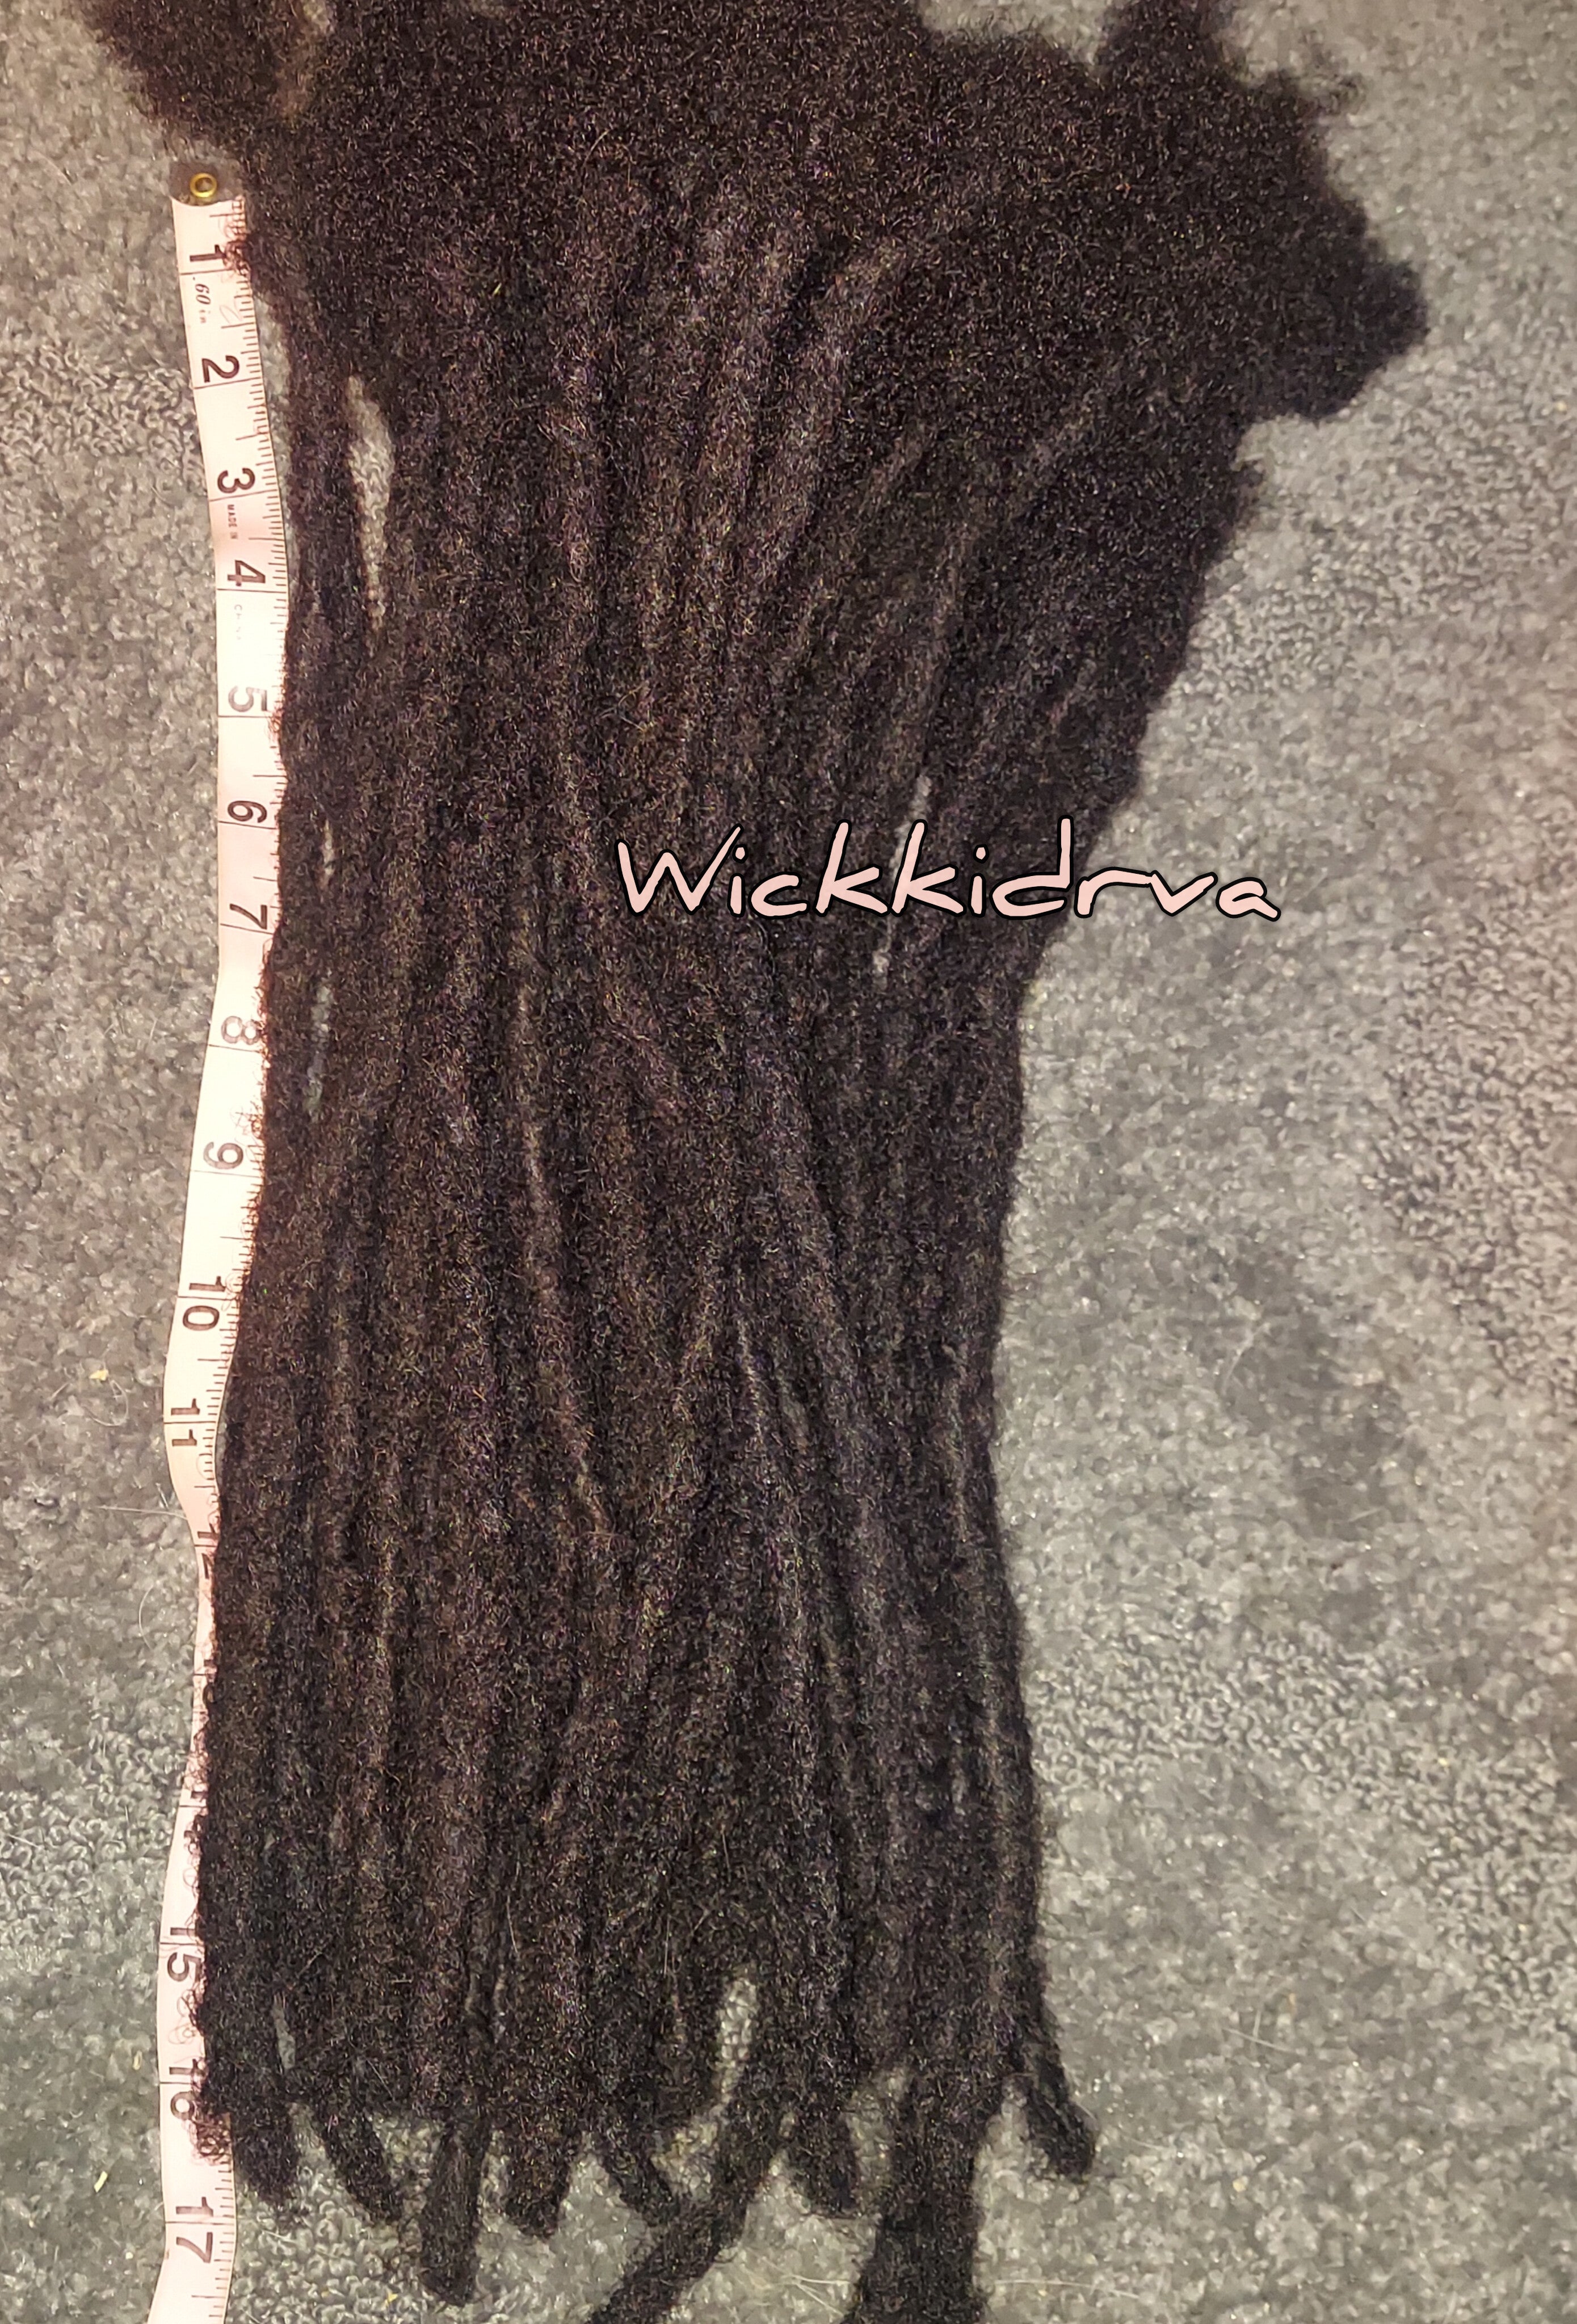 Handmade Wicks Locs Human Hair Extensions Nautral Black Hair 6 inch / 2cm / 5 Locs